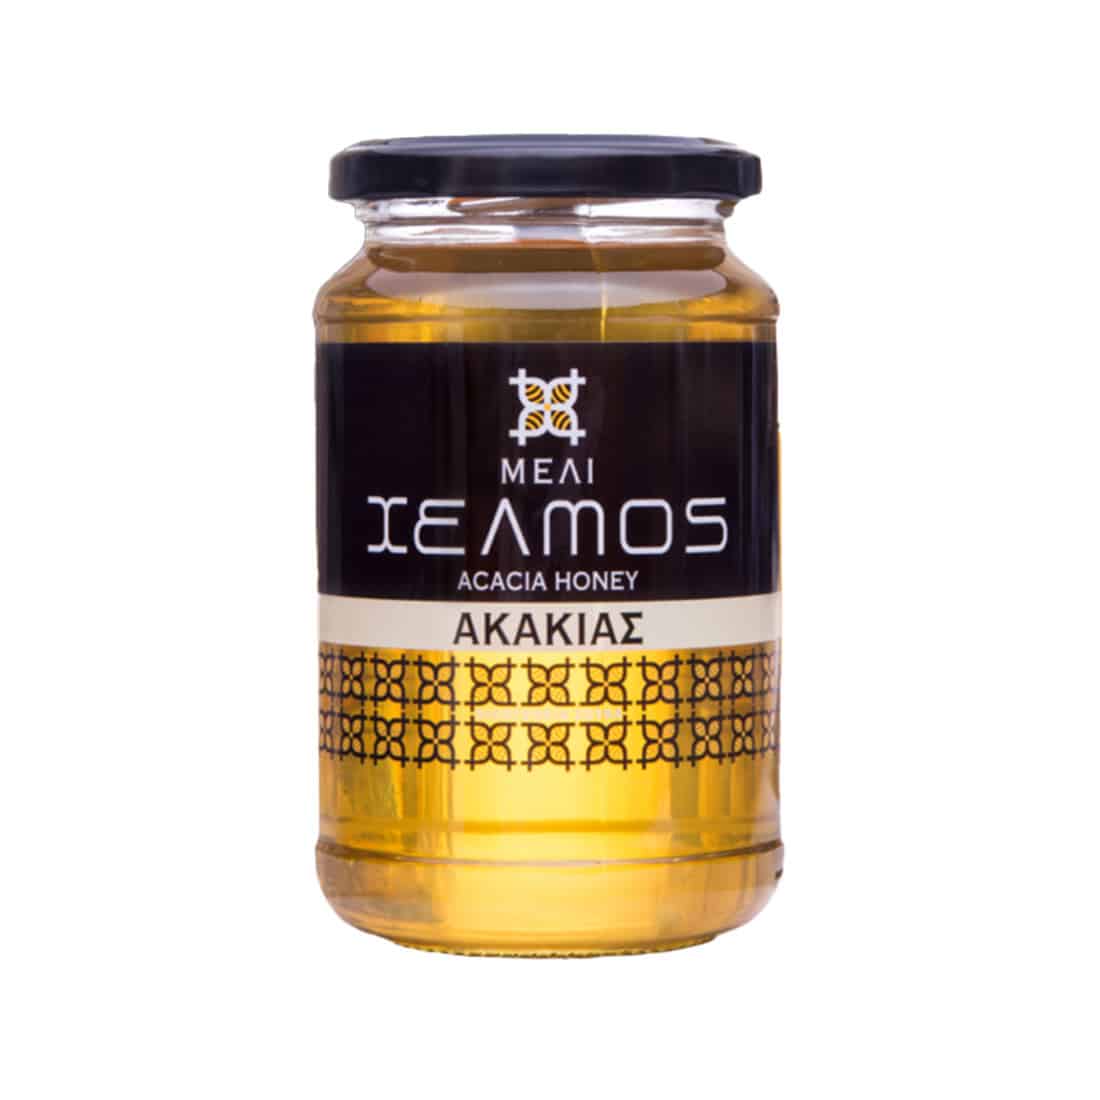 greek acacia honey buy online